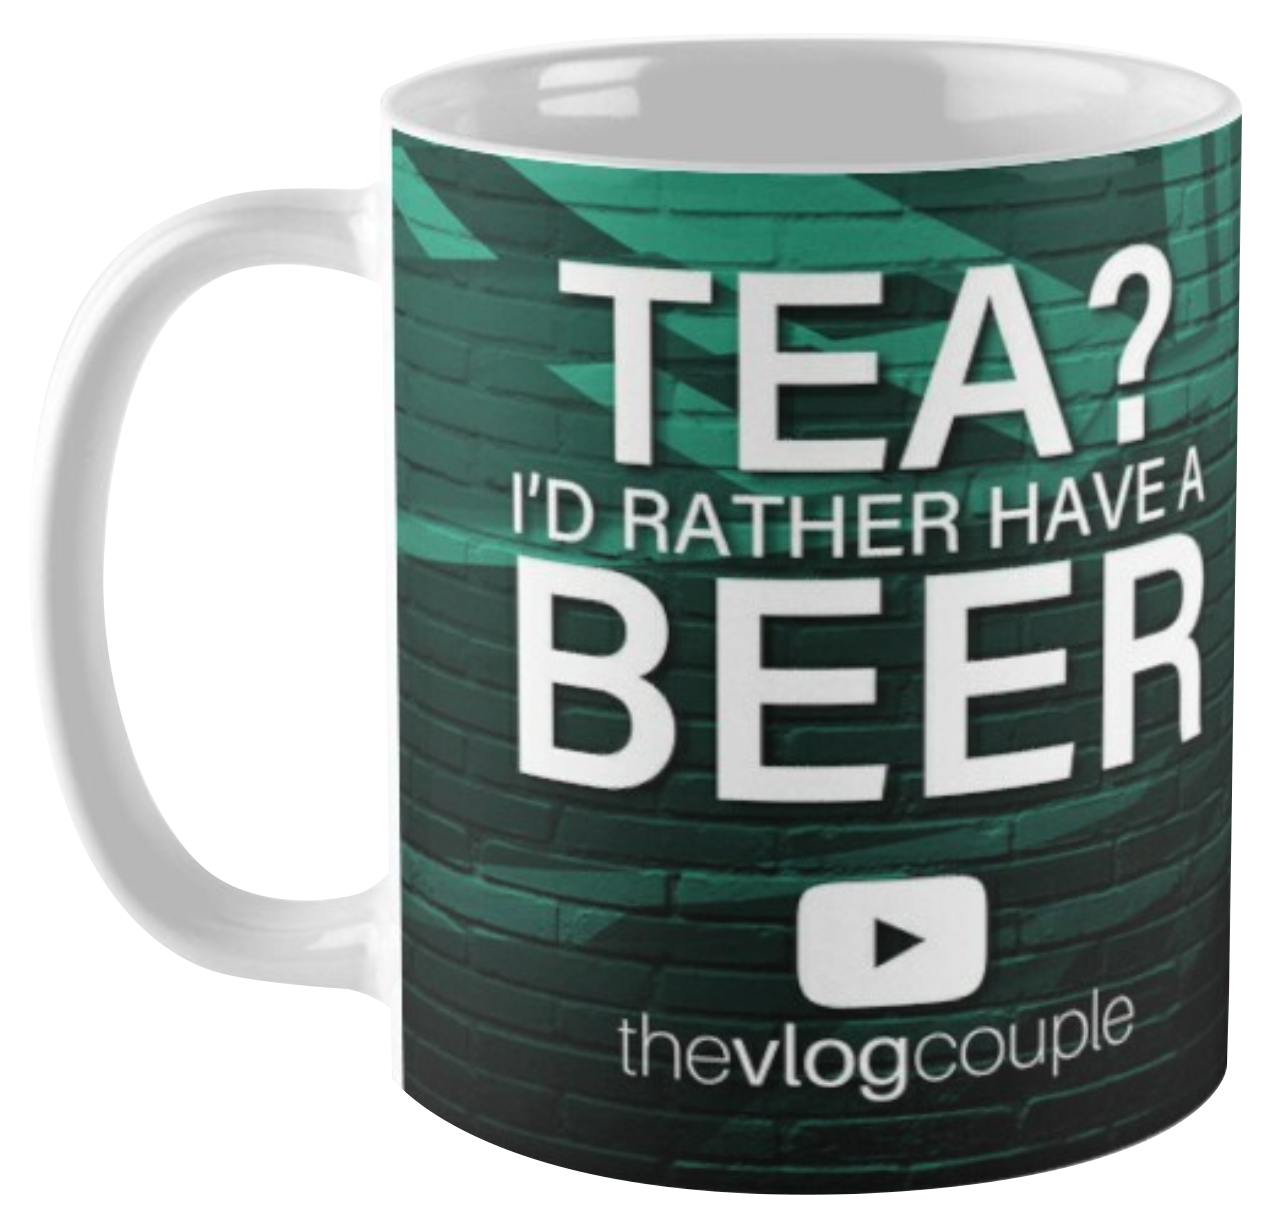 Rather have a beer mug